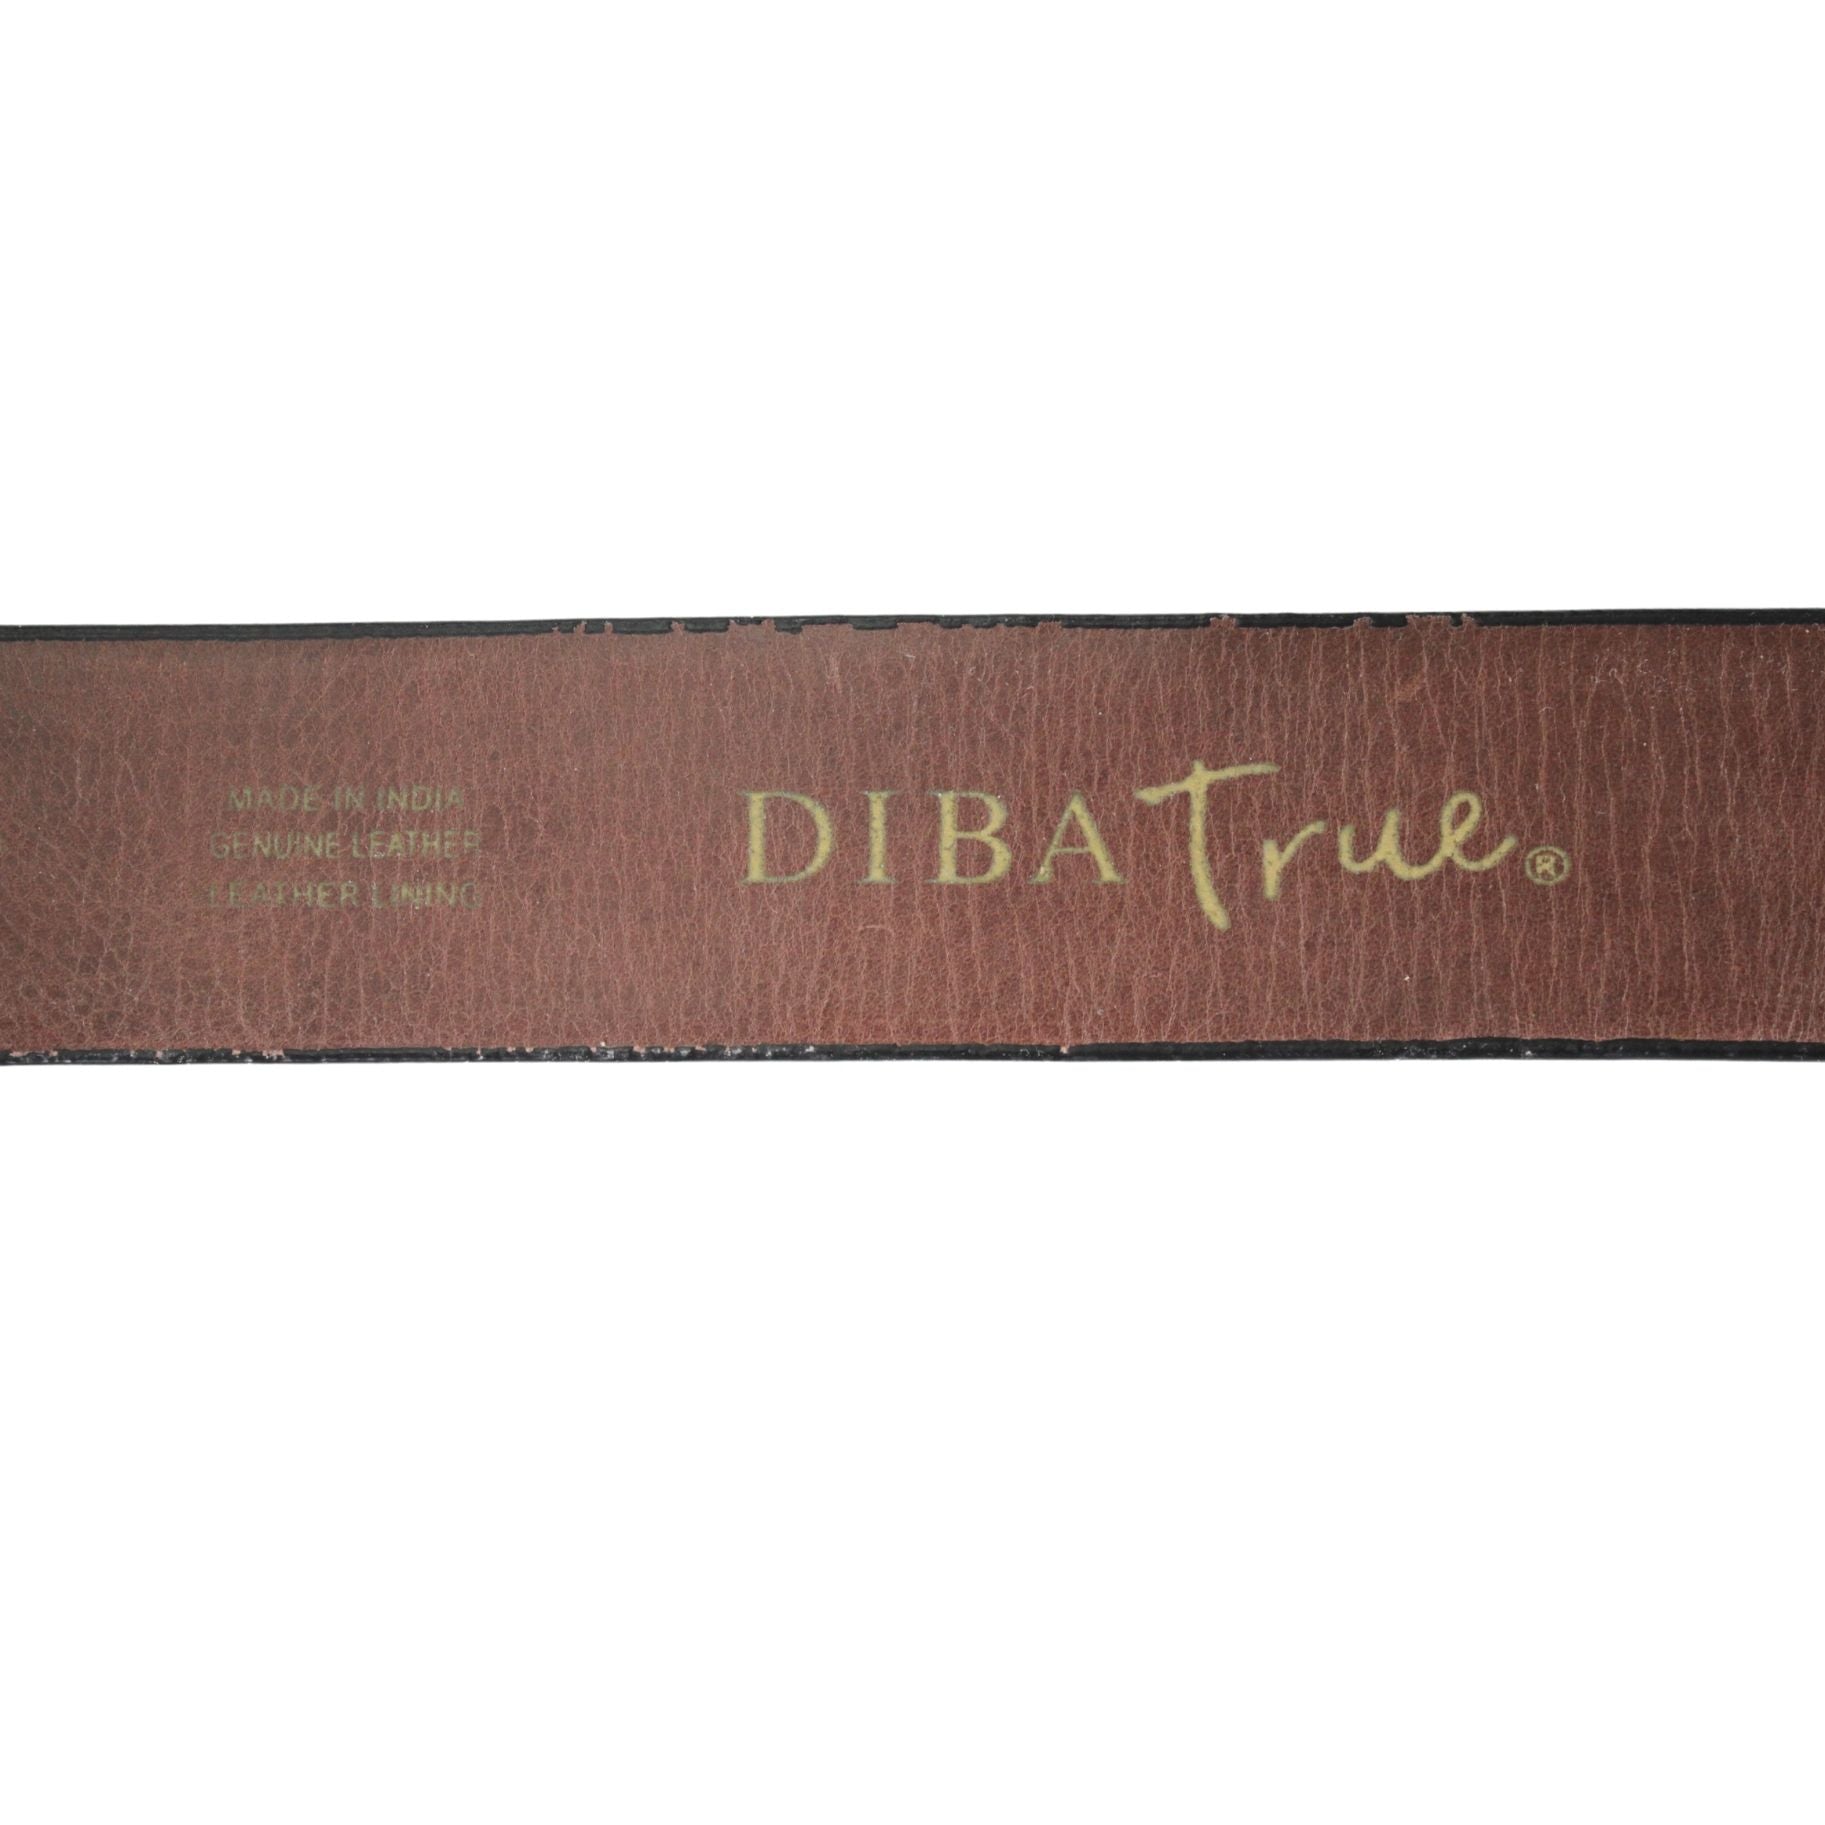 Diba True Women's Vintage Leather Belts